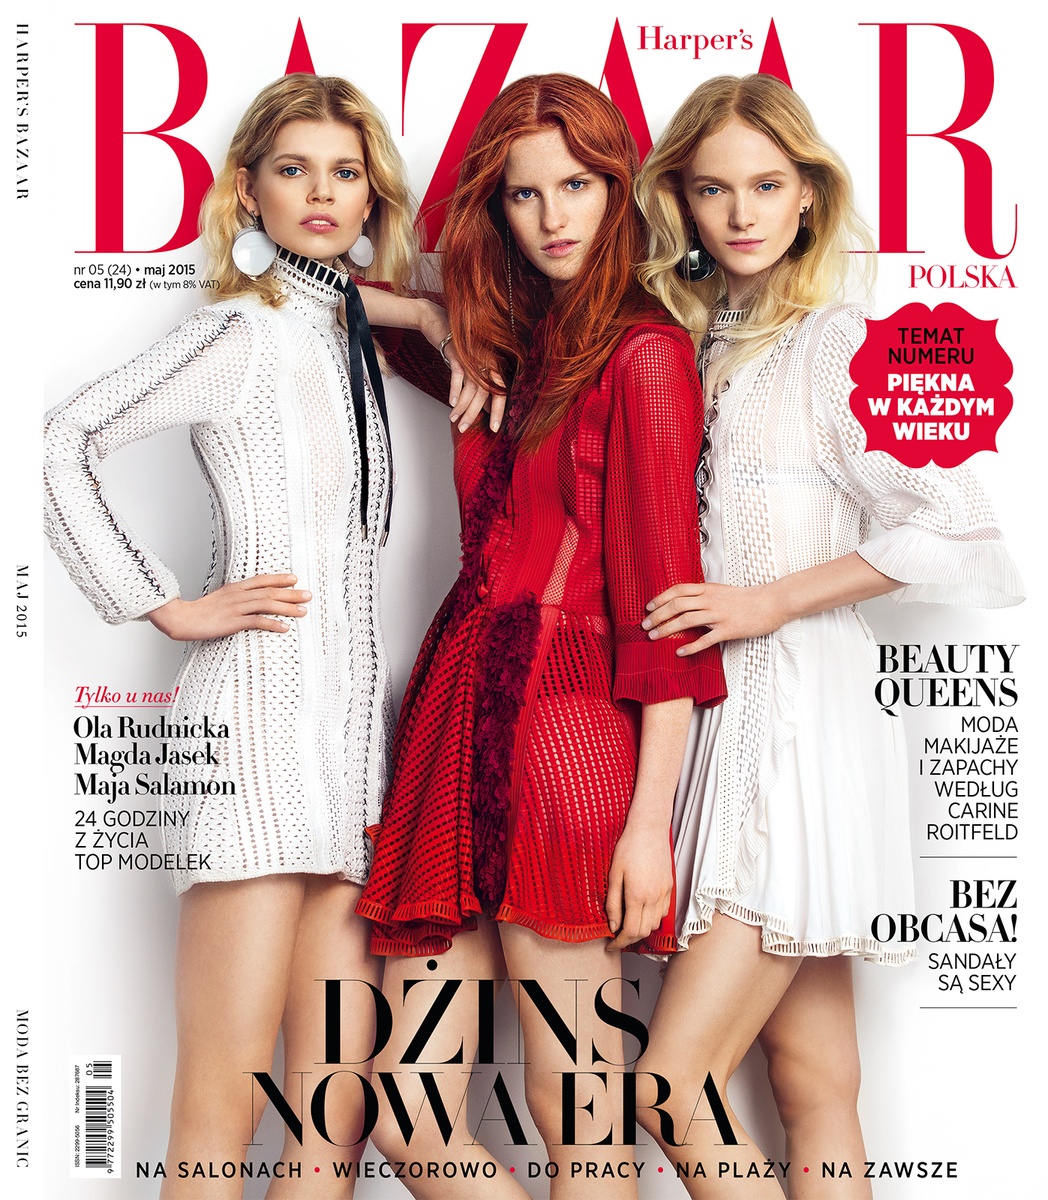 LUNDLUND : Harper's Bazaar Poland